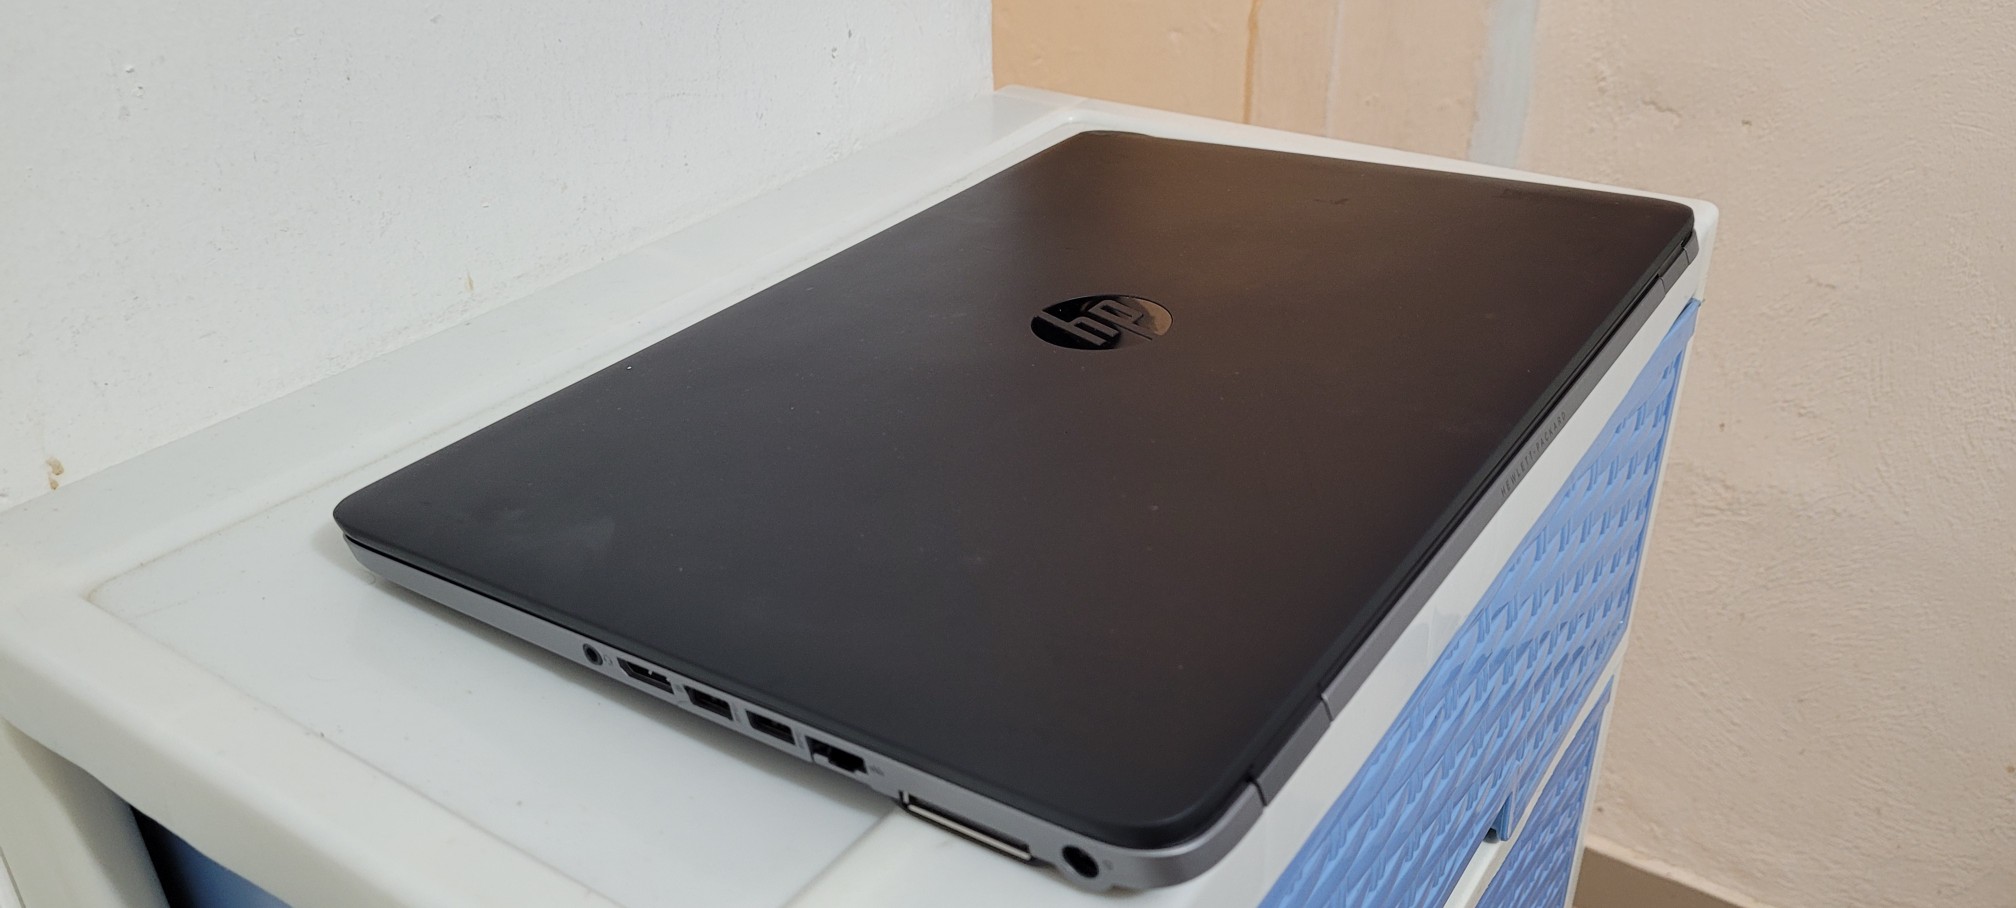 computadoras y laptops - Laptop hp 855 17 Pulg Core i5 Ram 8gb Disco 256gb Solido 2